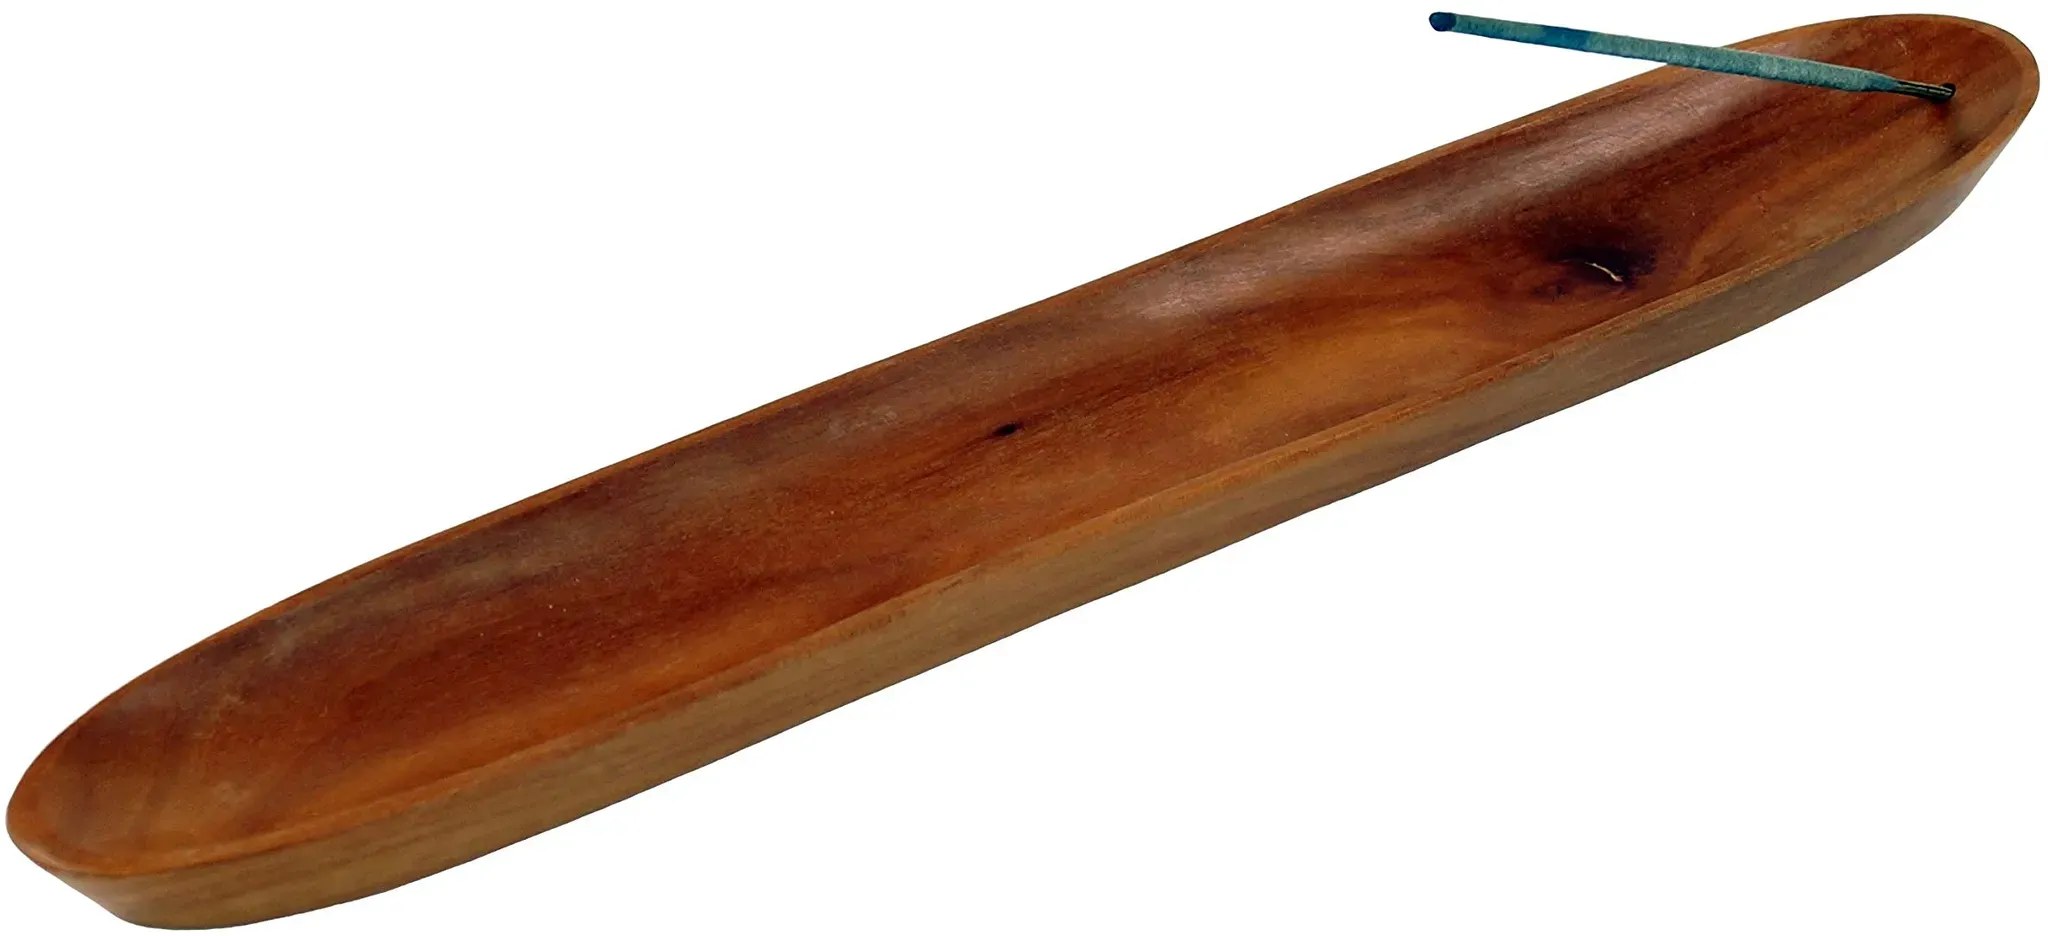 GURU SHOP Räucherstäbchenhalter aus Indonesien - Hell, Braun, Holz, 1,5x30x5 cm, Räucherstäbchen Halter